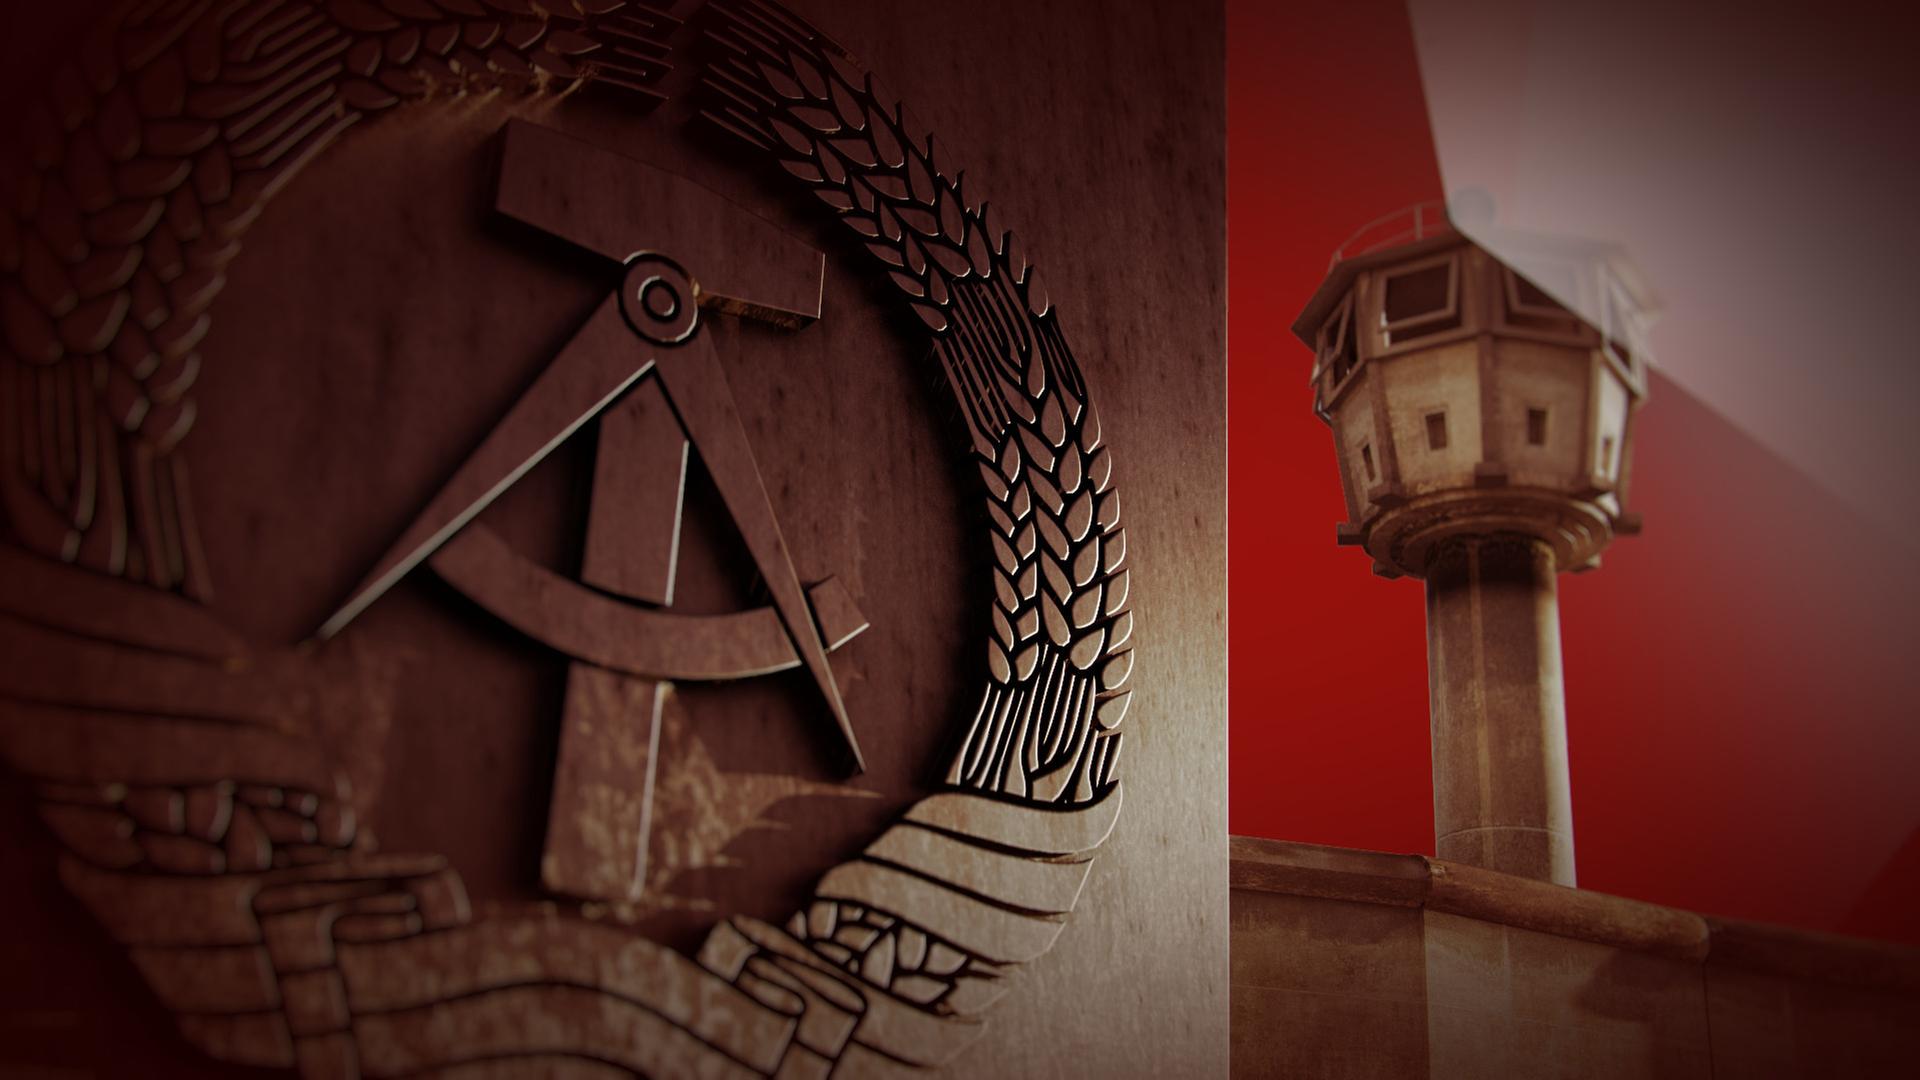 Animierte grafische Elemente vor rötlichem Hintergrund. Im Bildvordergrund links Hammer und Zirkel im Ährenkranz, rechts ein Wachtturm vor einer Mauer.